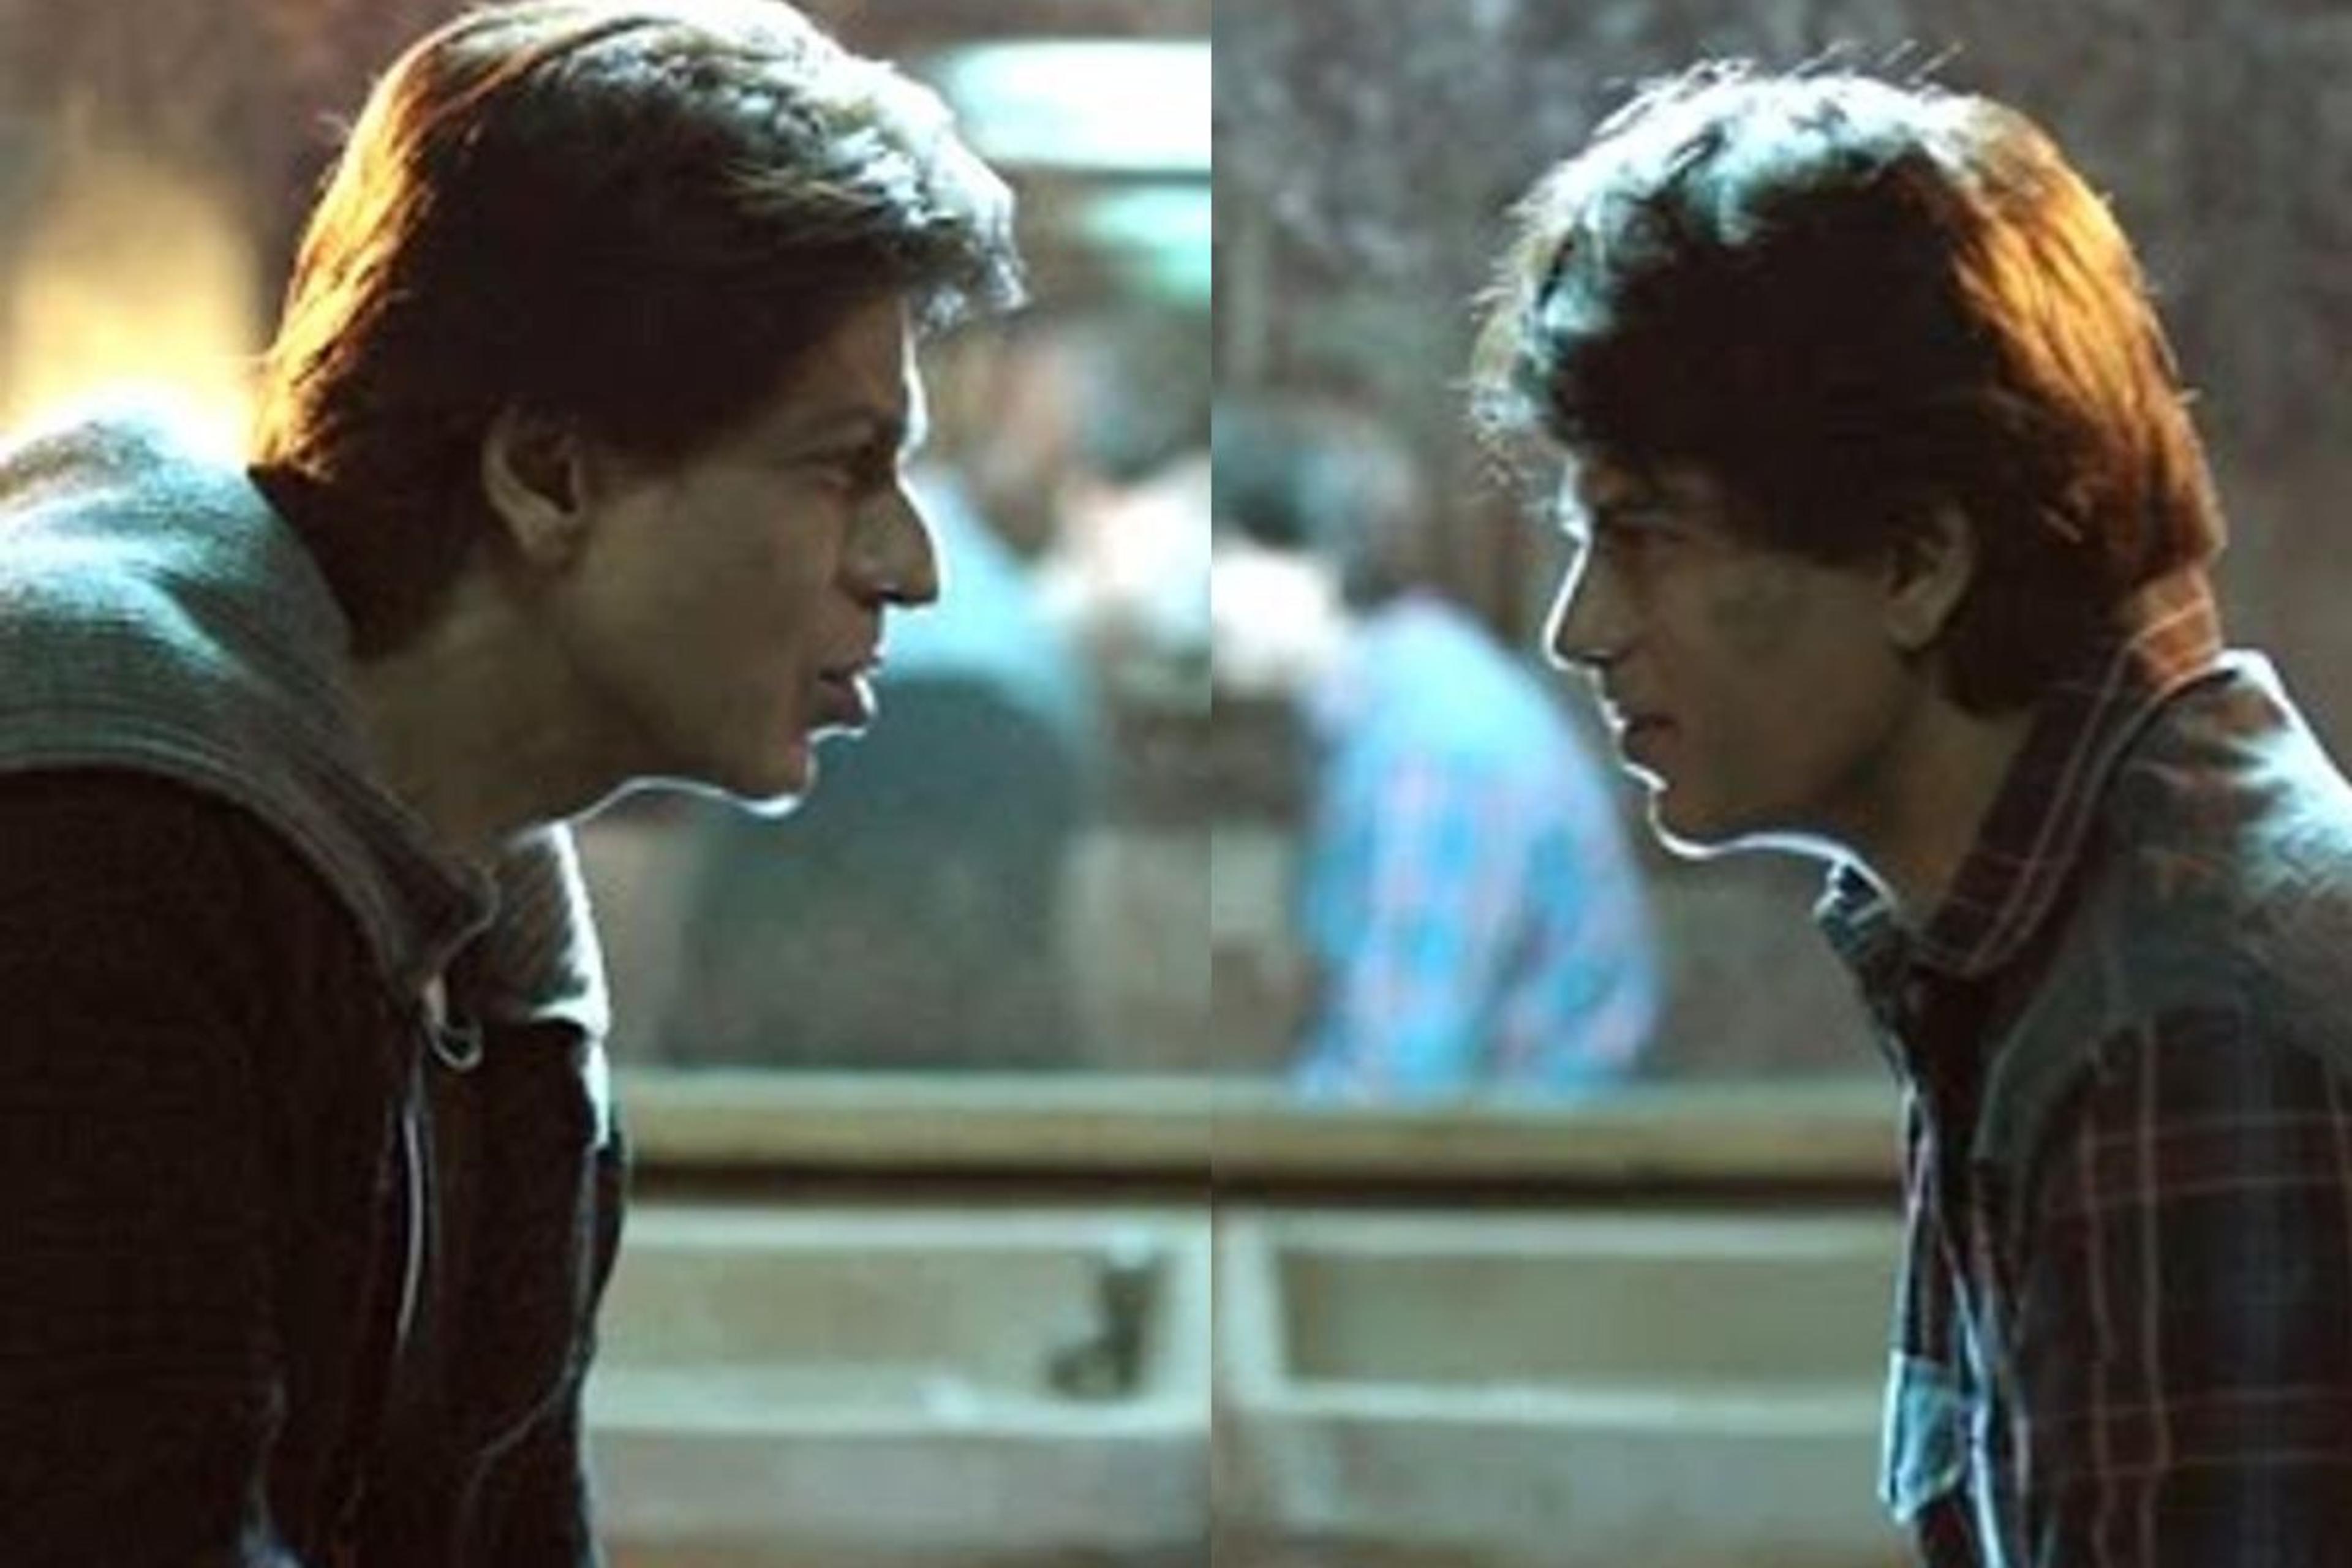 शाहरुख खान की फिल्म ‘फैन’ पर महिला ने किया था केस, 8 साल बाद सुप्रीम कोर्ट ने
दिया बड़ा फैसला